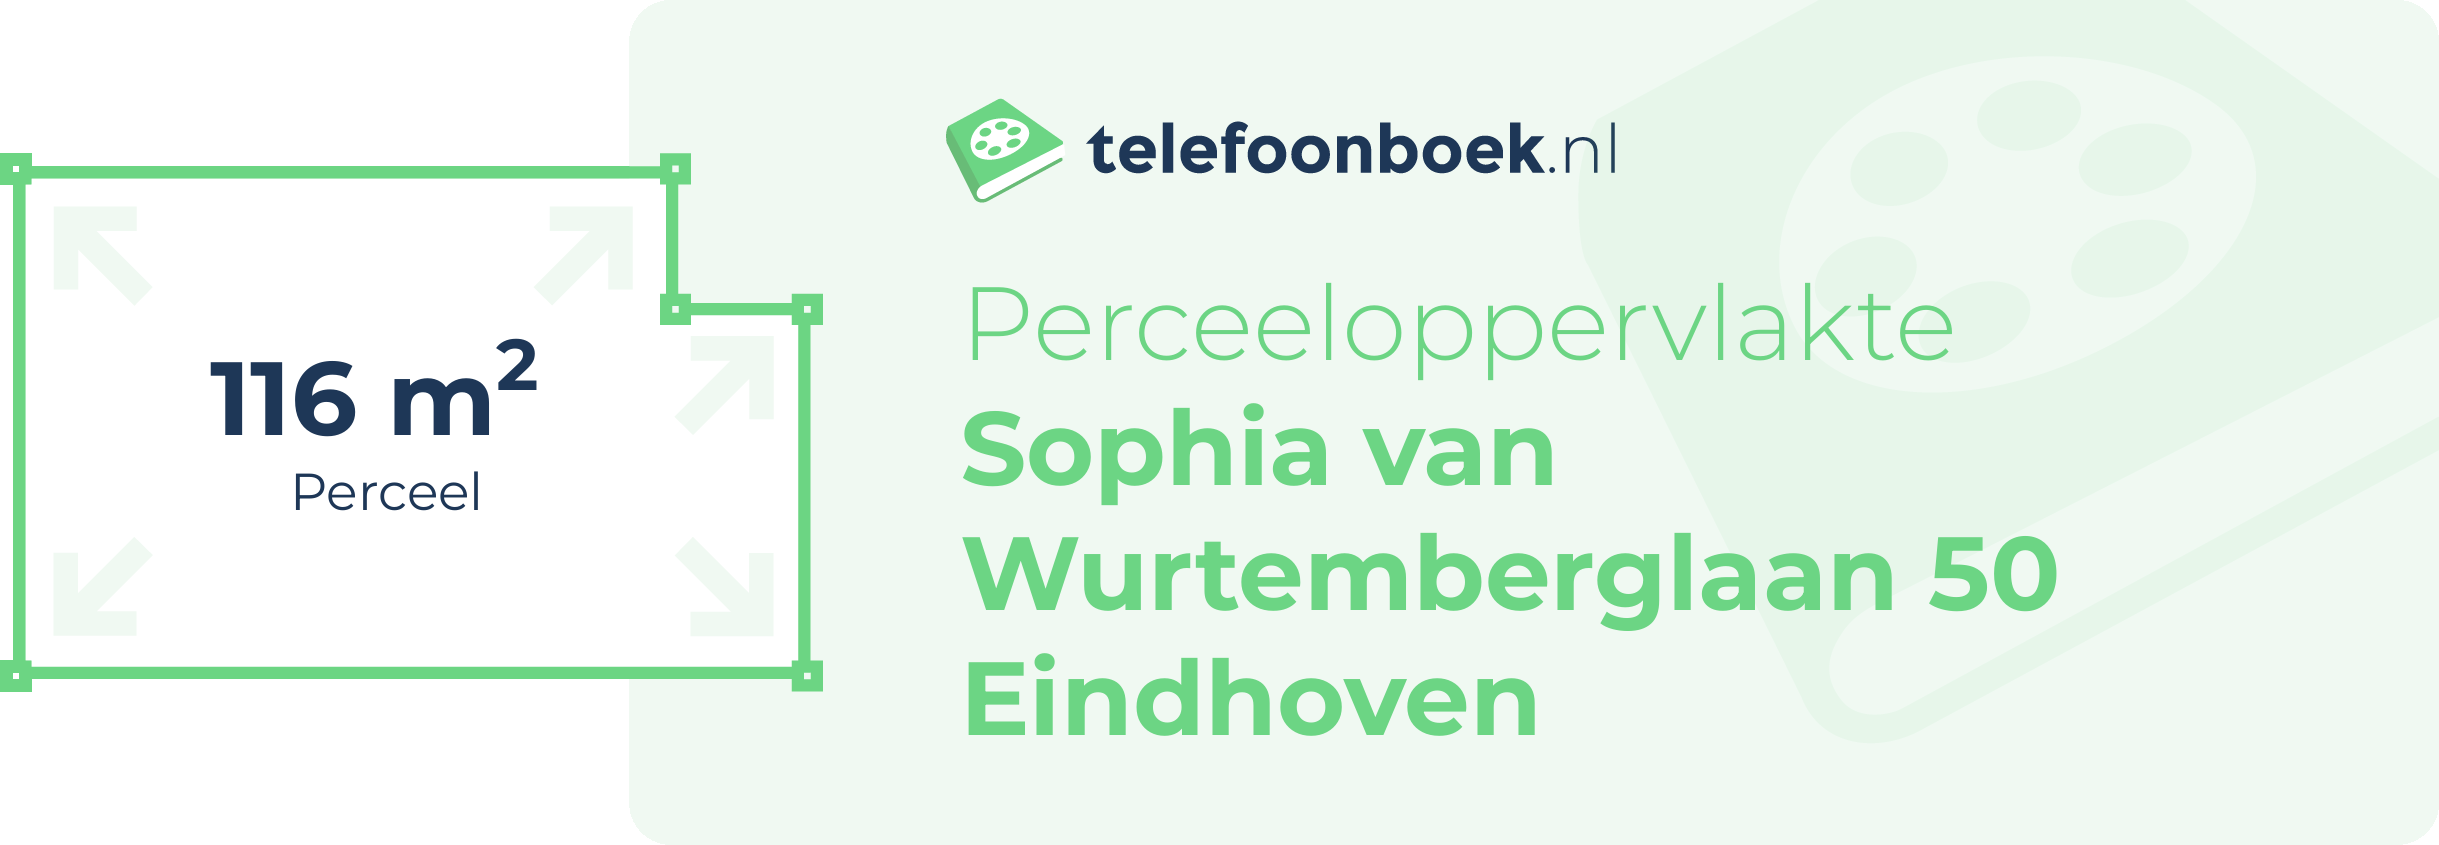 Perceeloppervlakte Sophia Van Wurtemberglaan 50 Eindhoven